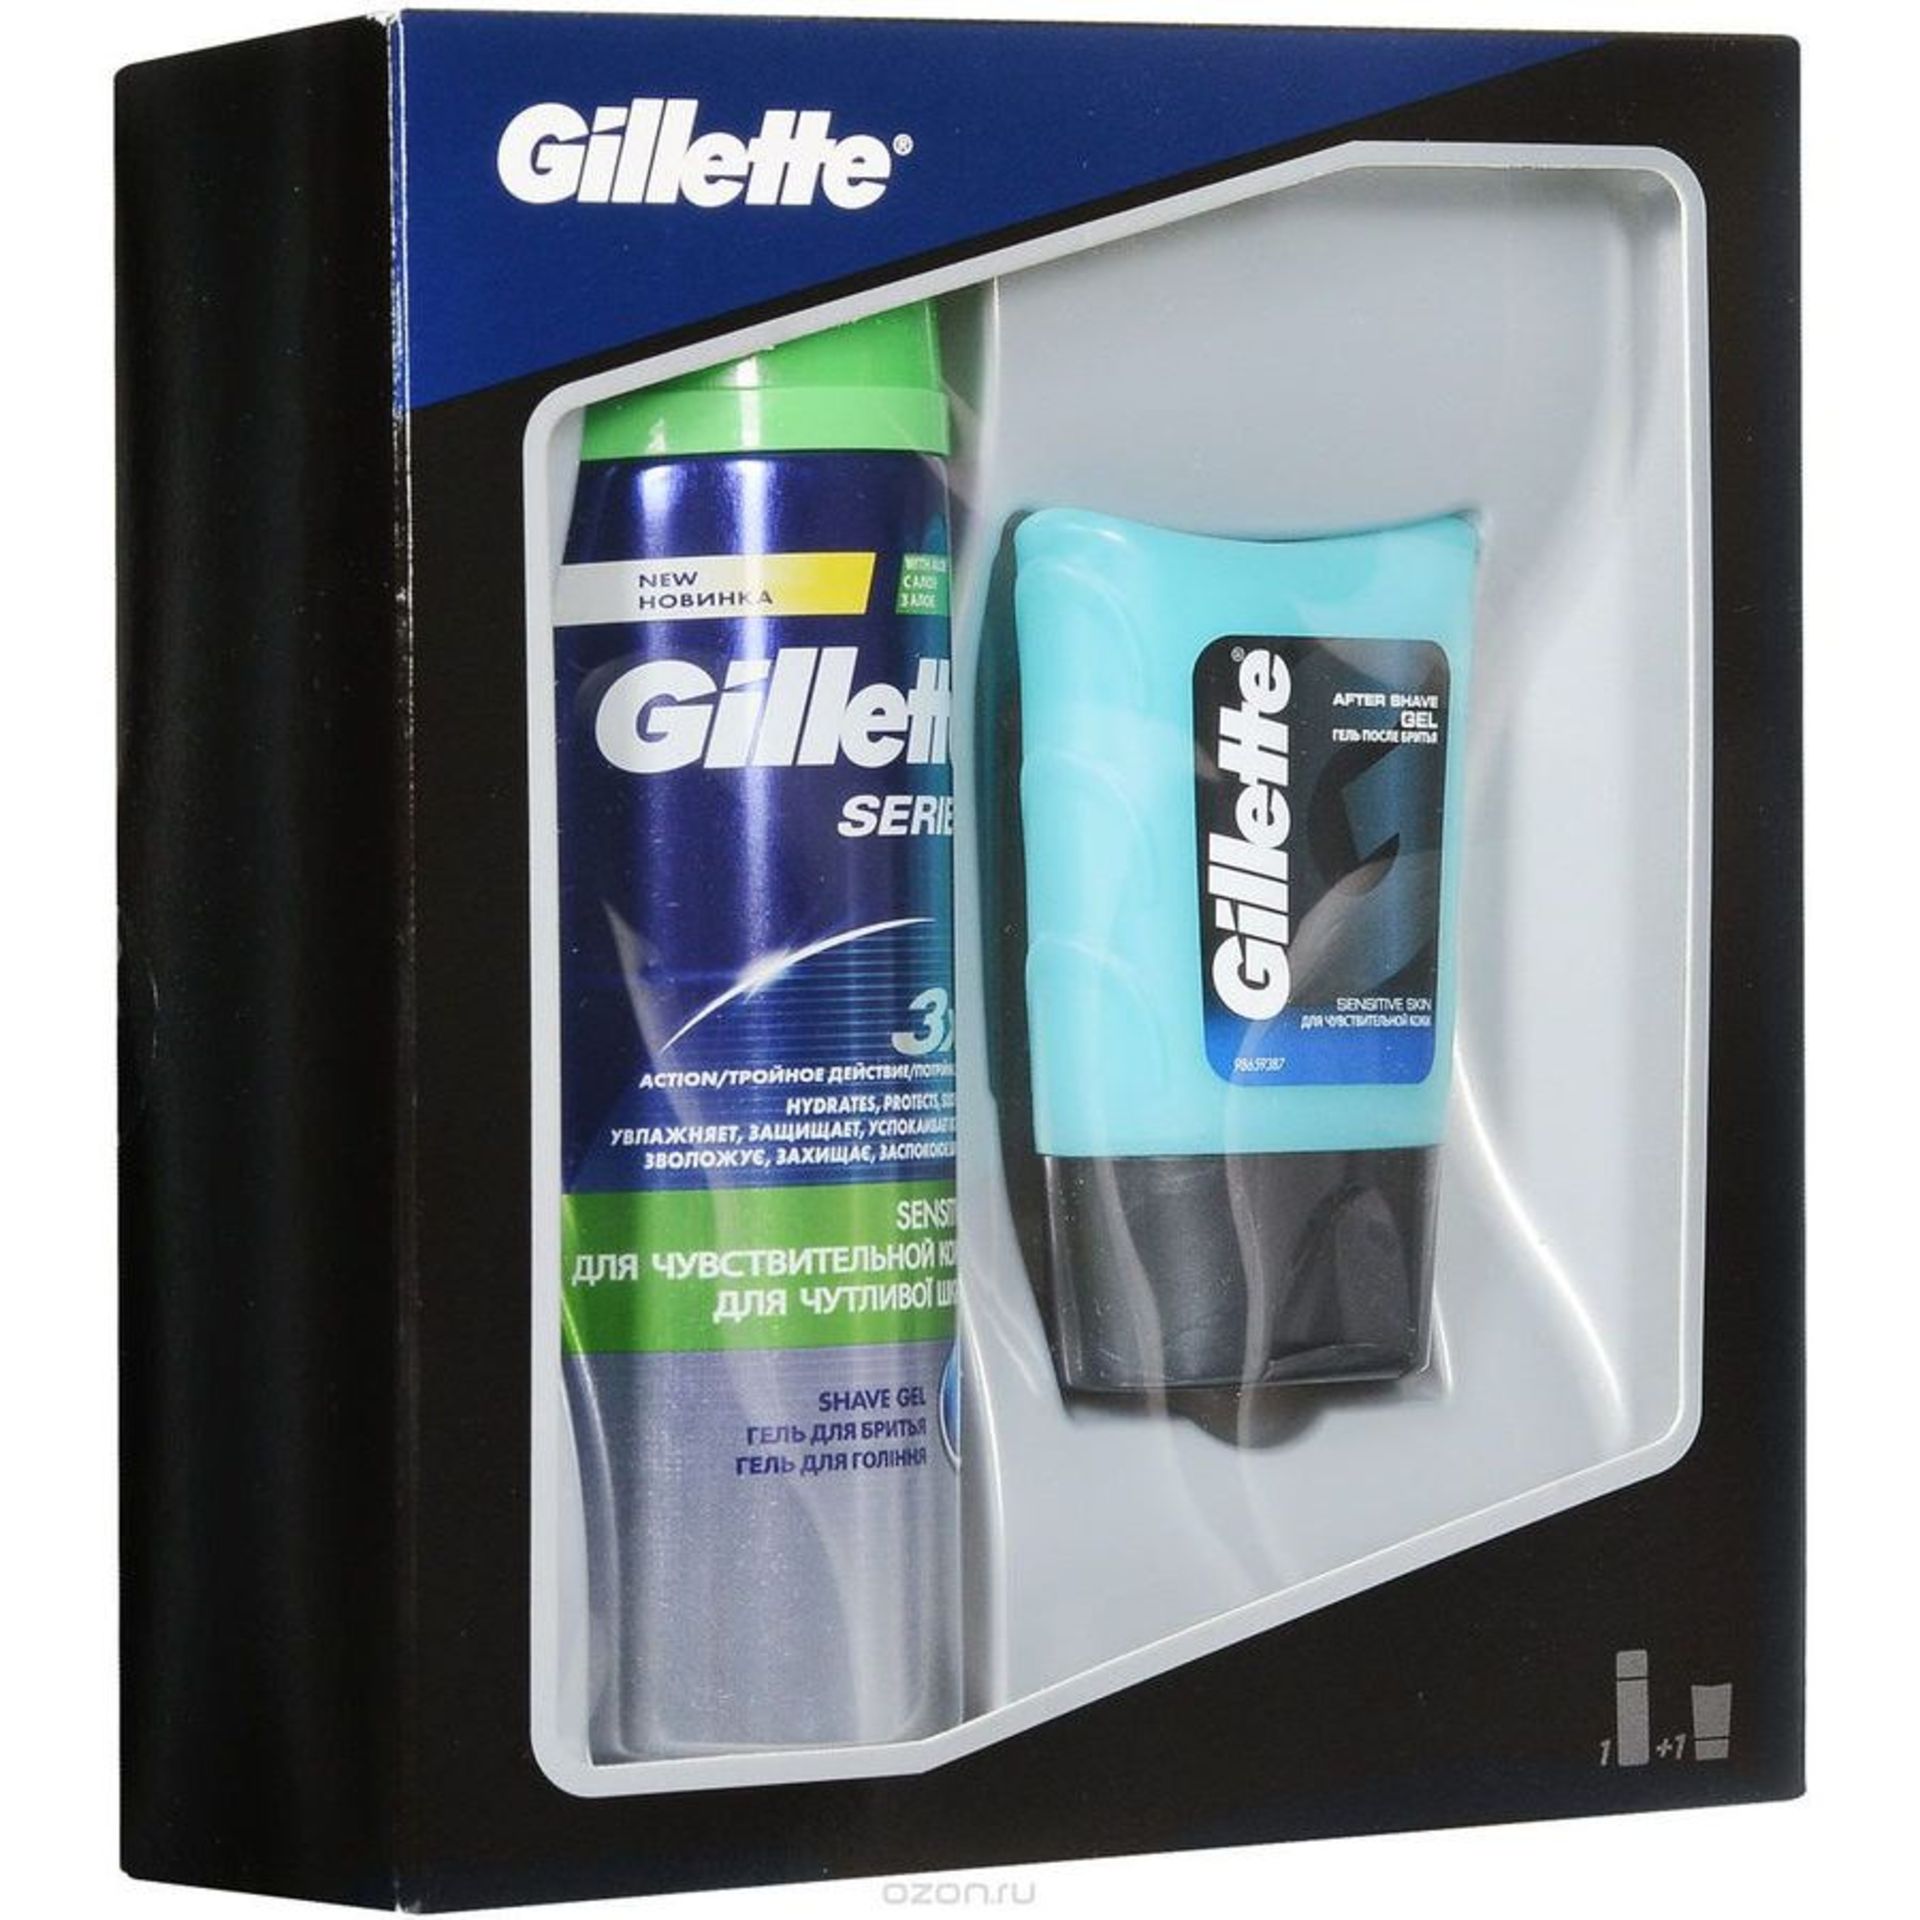 V Brand New Gillette Series Sensitive Shave Gel 200ml & Aftershave Gel For Sensitive Skin (75ml)